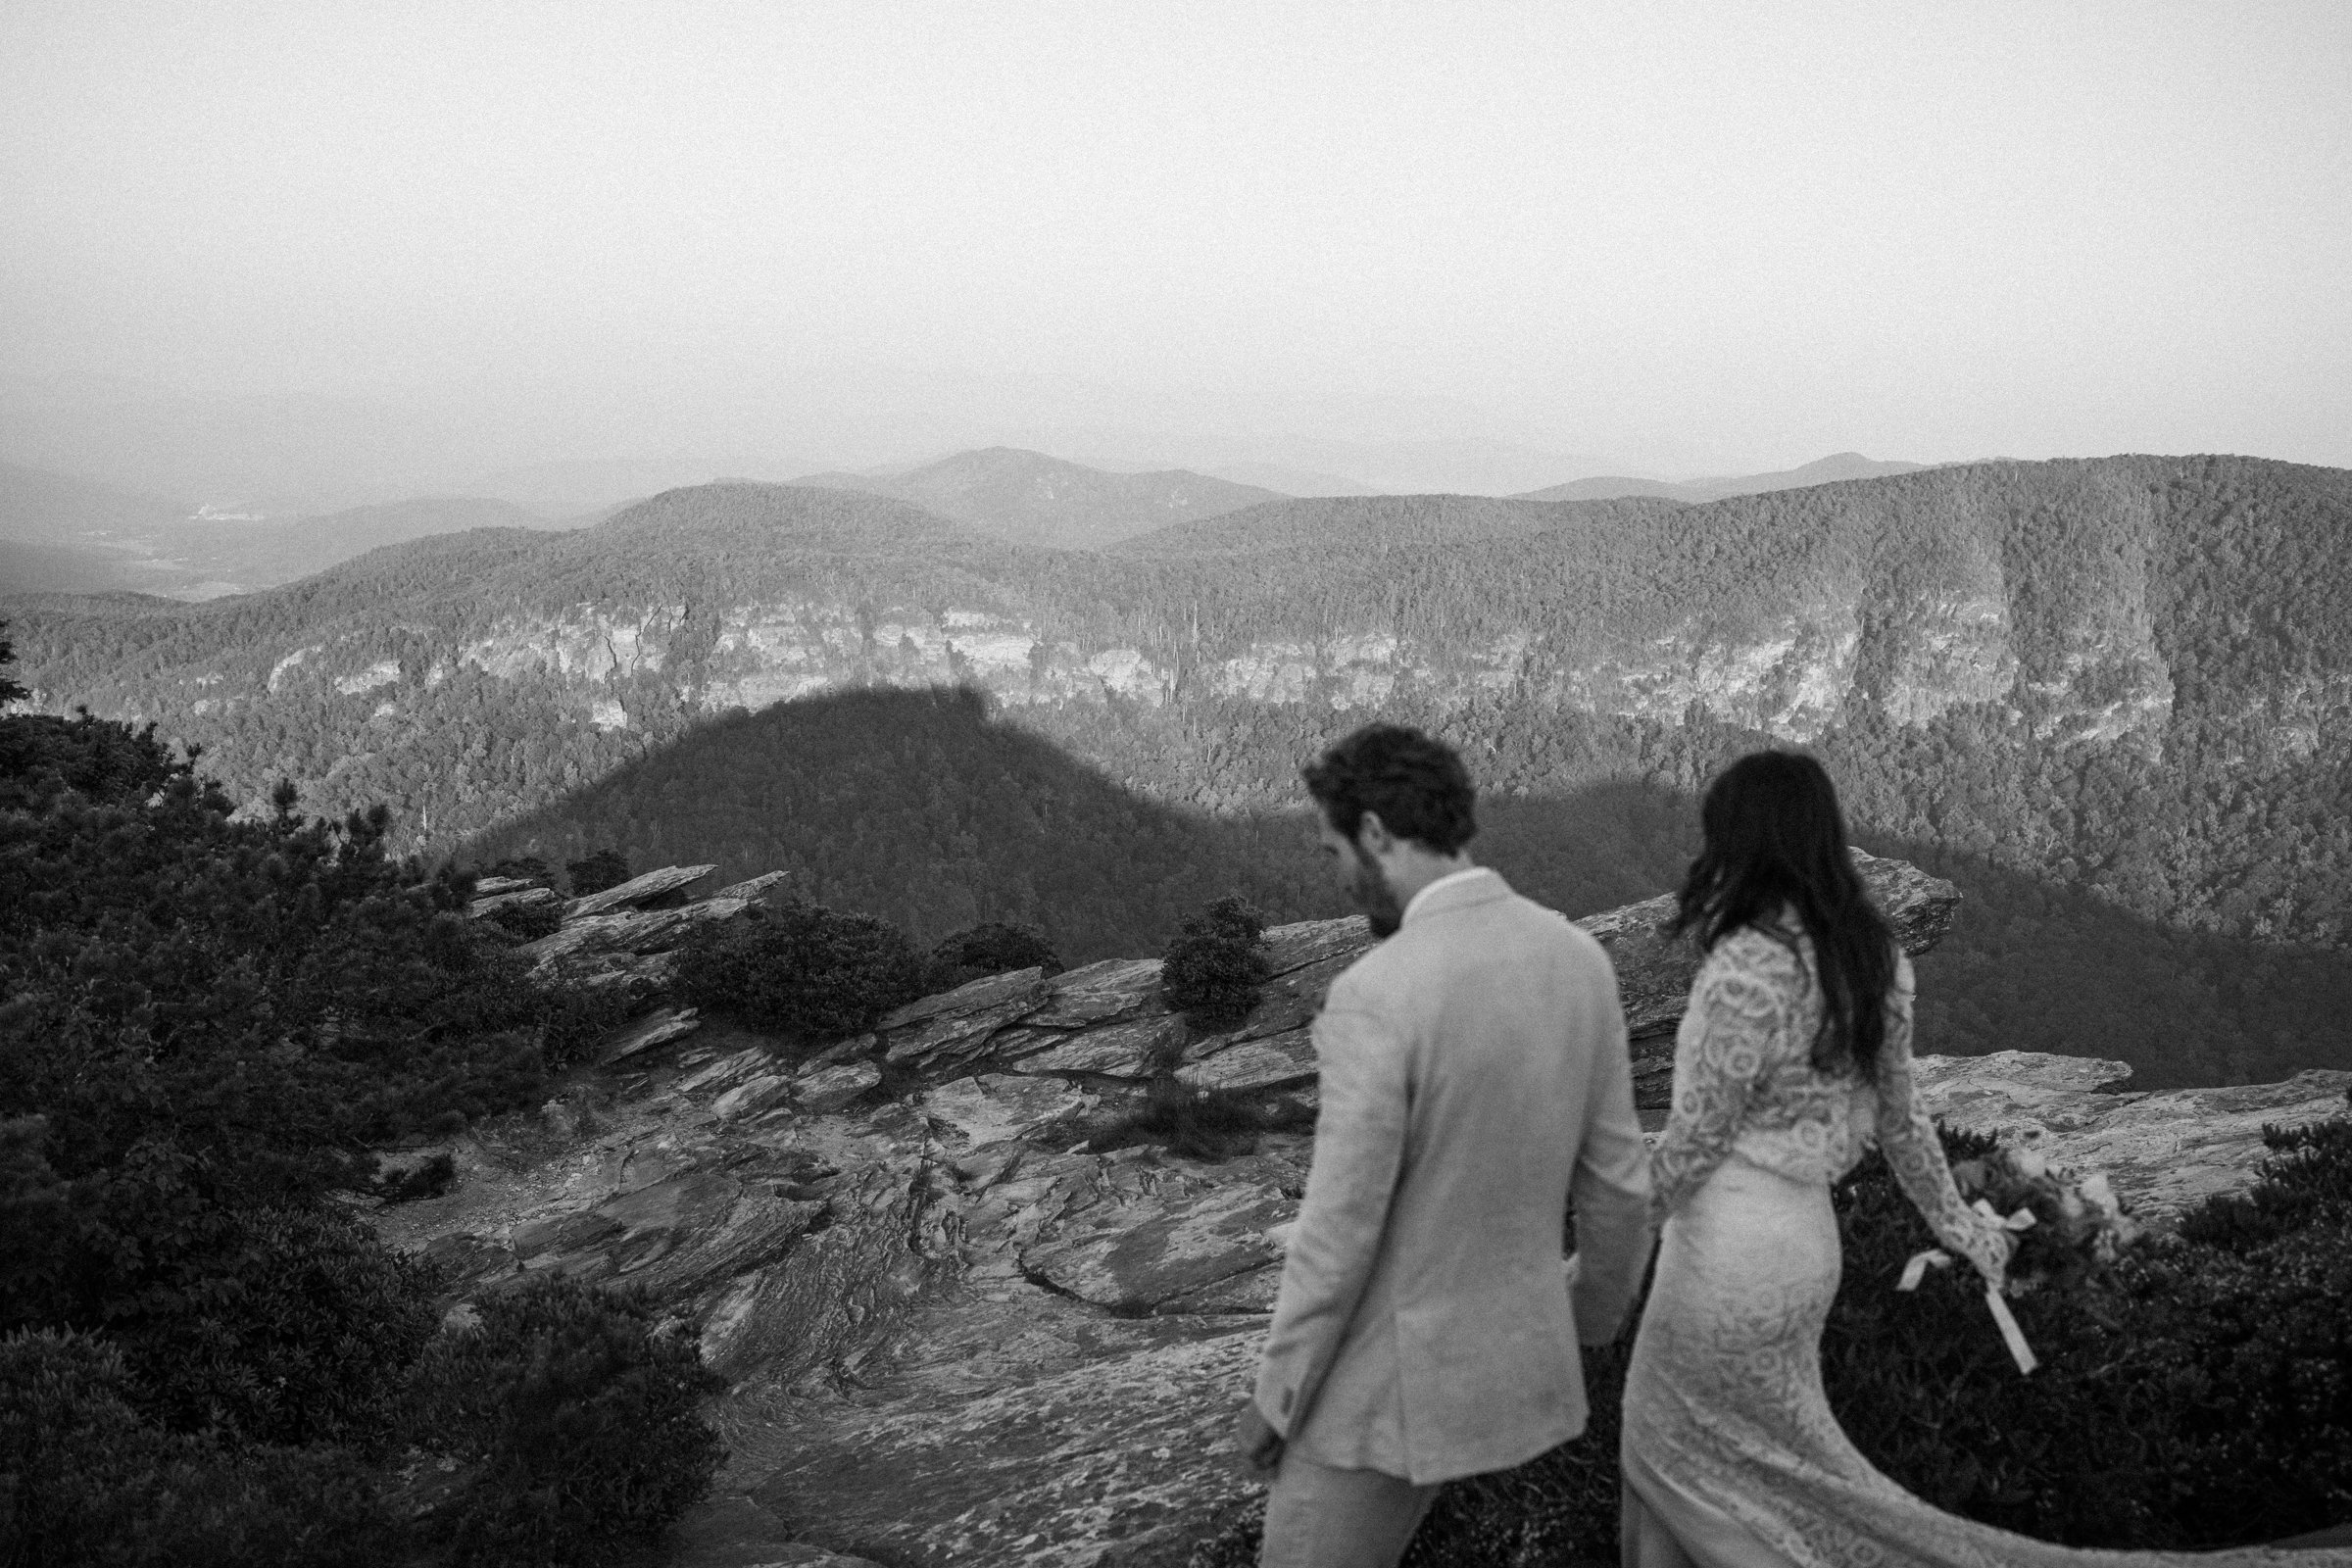 hawksbill-mountain-trail-elopement-asheville-elopement-photographer-103.jpg